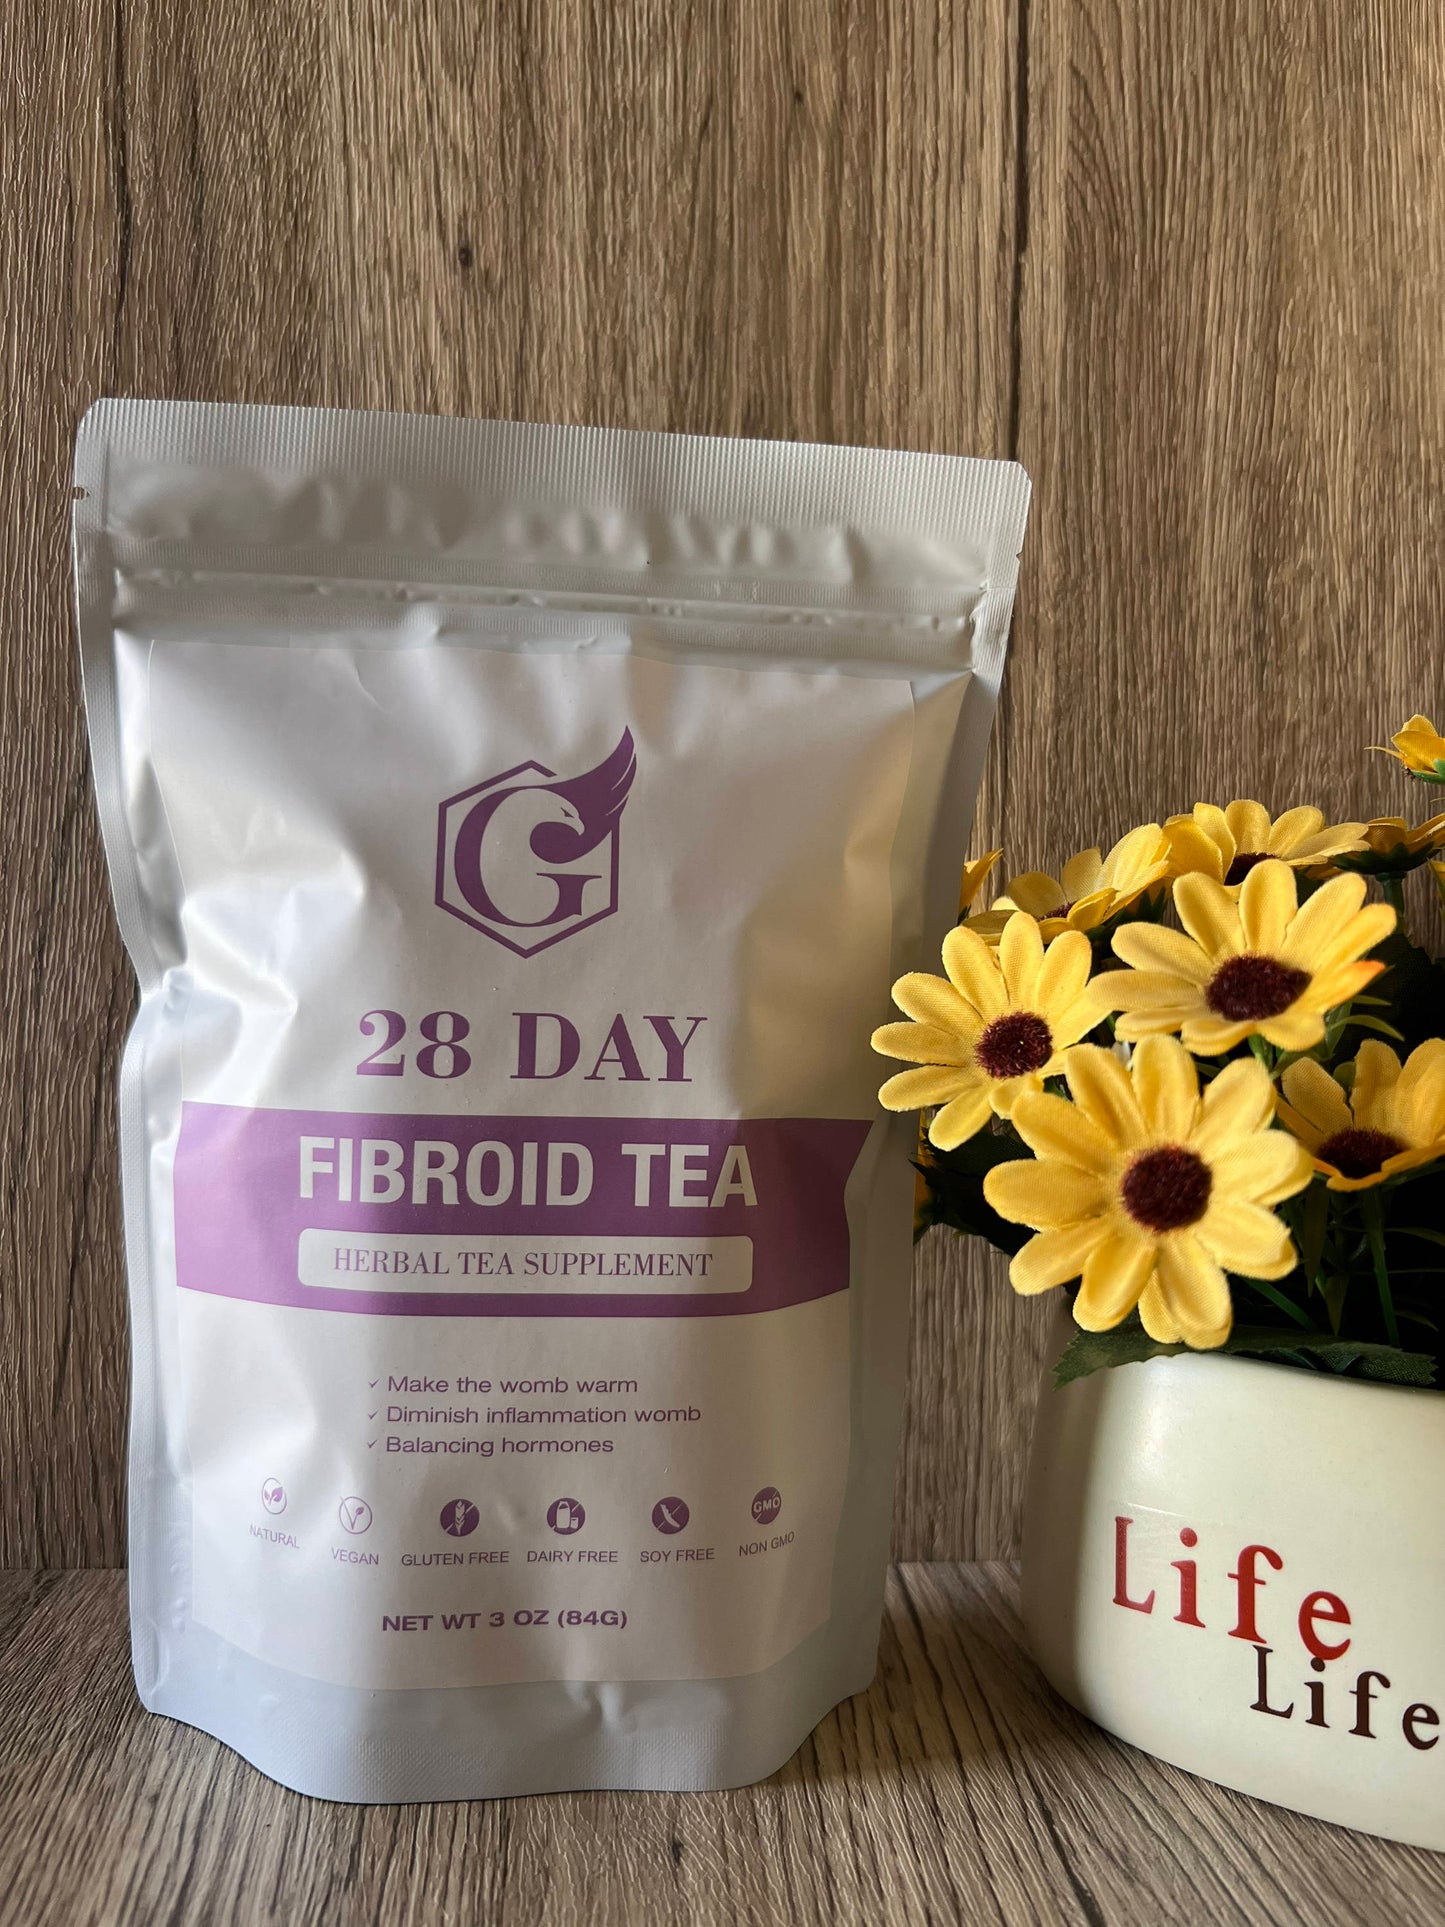 28-Day Fibroid Tea - Decaffeinated Gluten-Free Vegan Dairy-Free Soy-Free Non-GMO